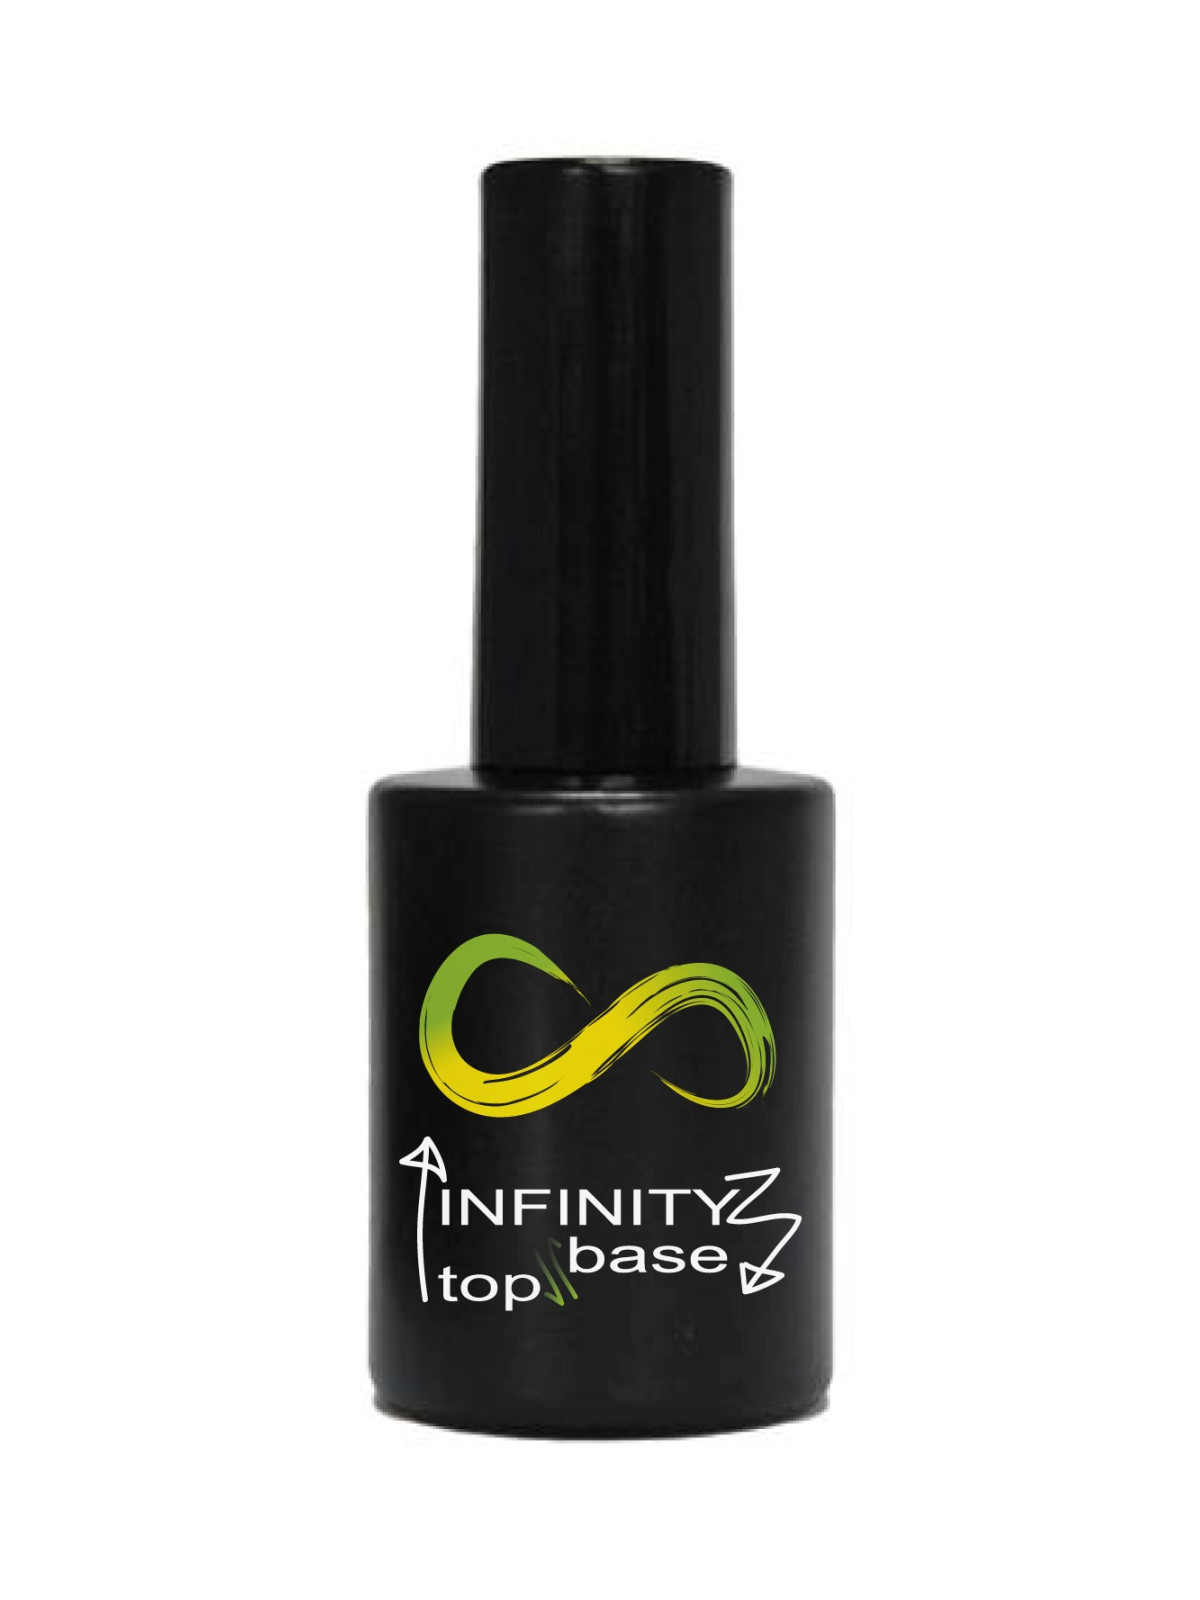 Infinity BaseTop smalto gel semipermanente12,90 €